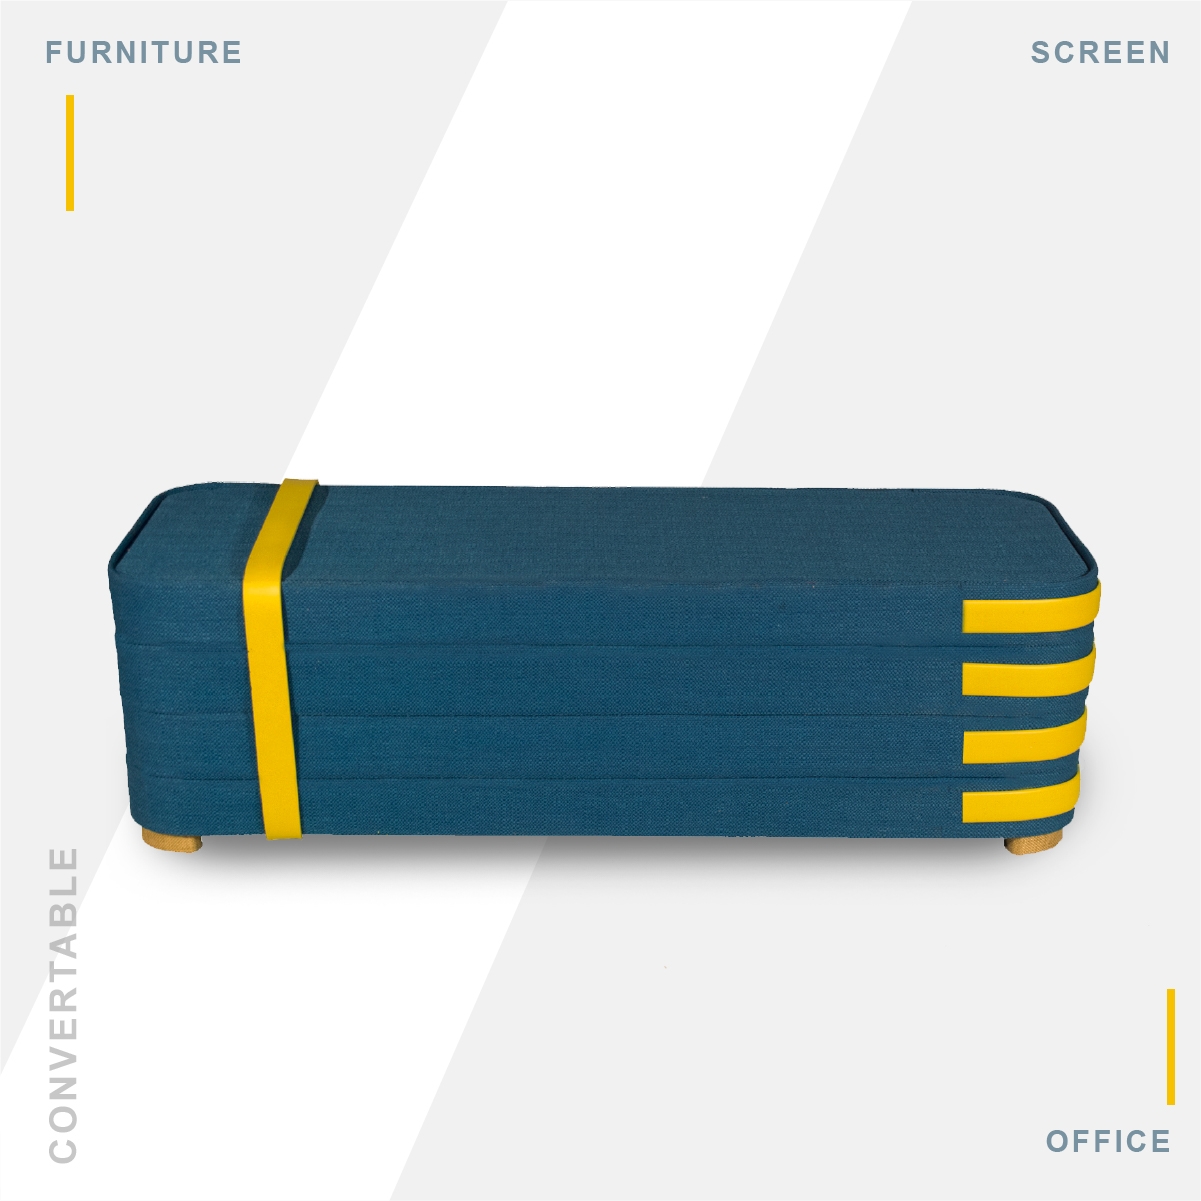 Furniture Design / Office Furniture